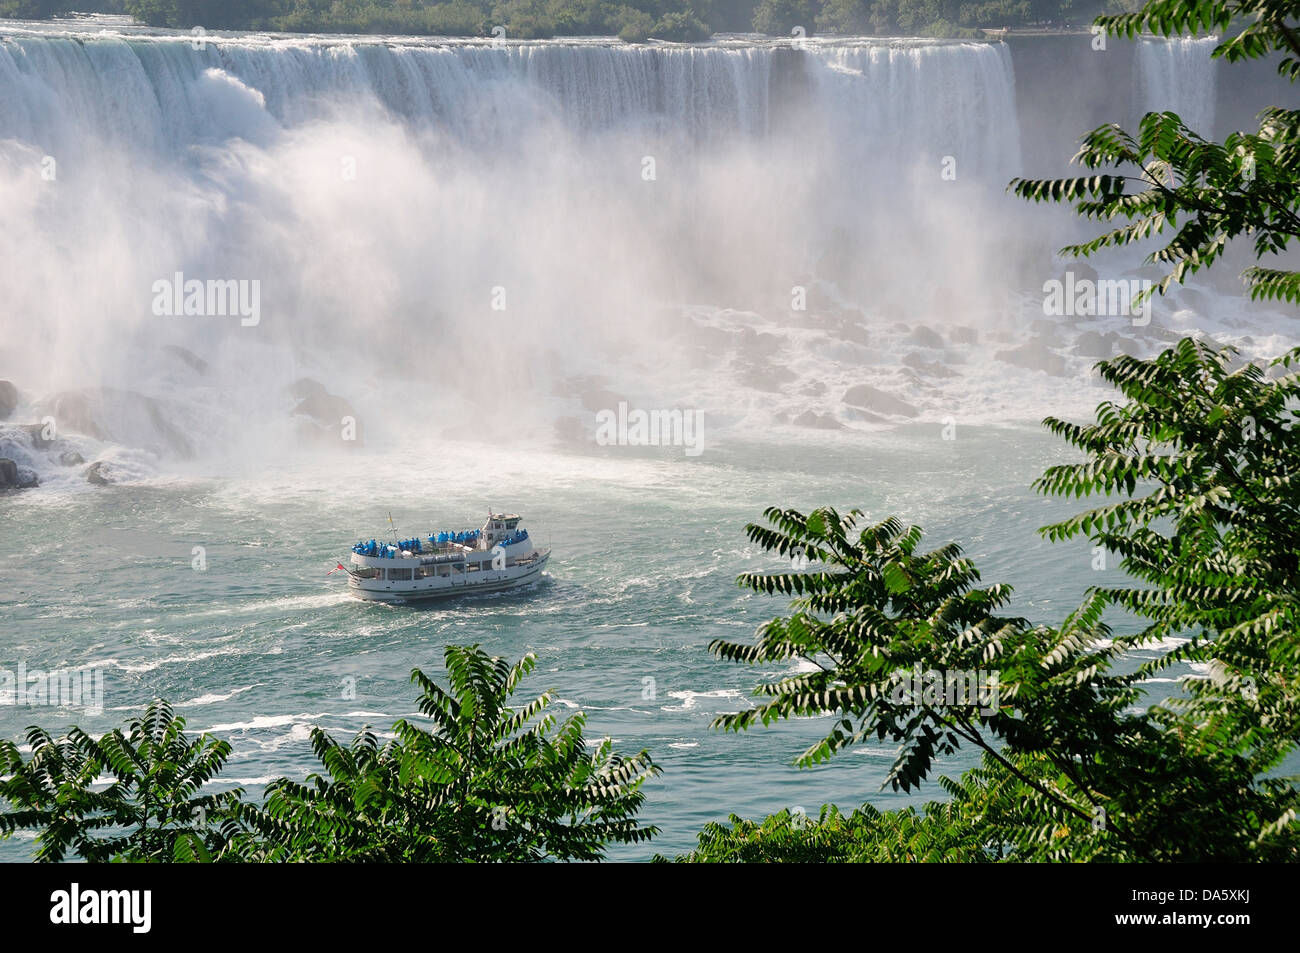 Canadá, Niagara Falls, Ontario, agua, barco, gigantescas cataratas, niebla, turismo, cascada, barco Foto de stock